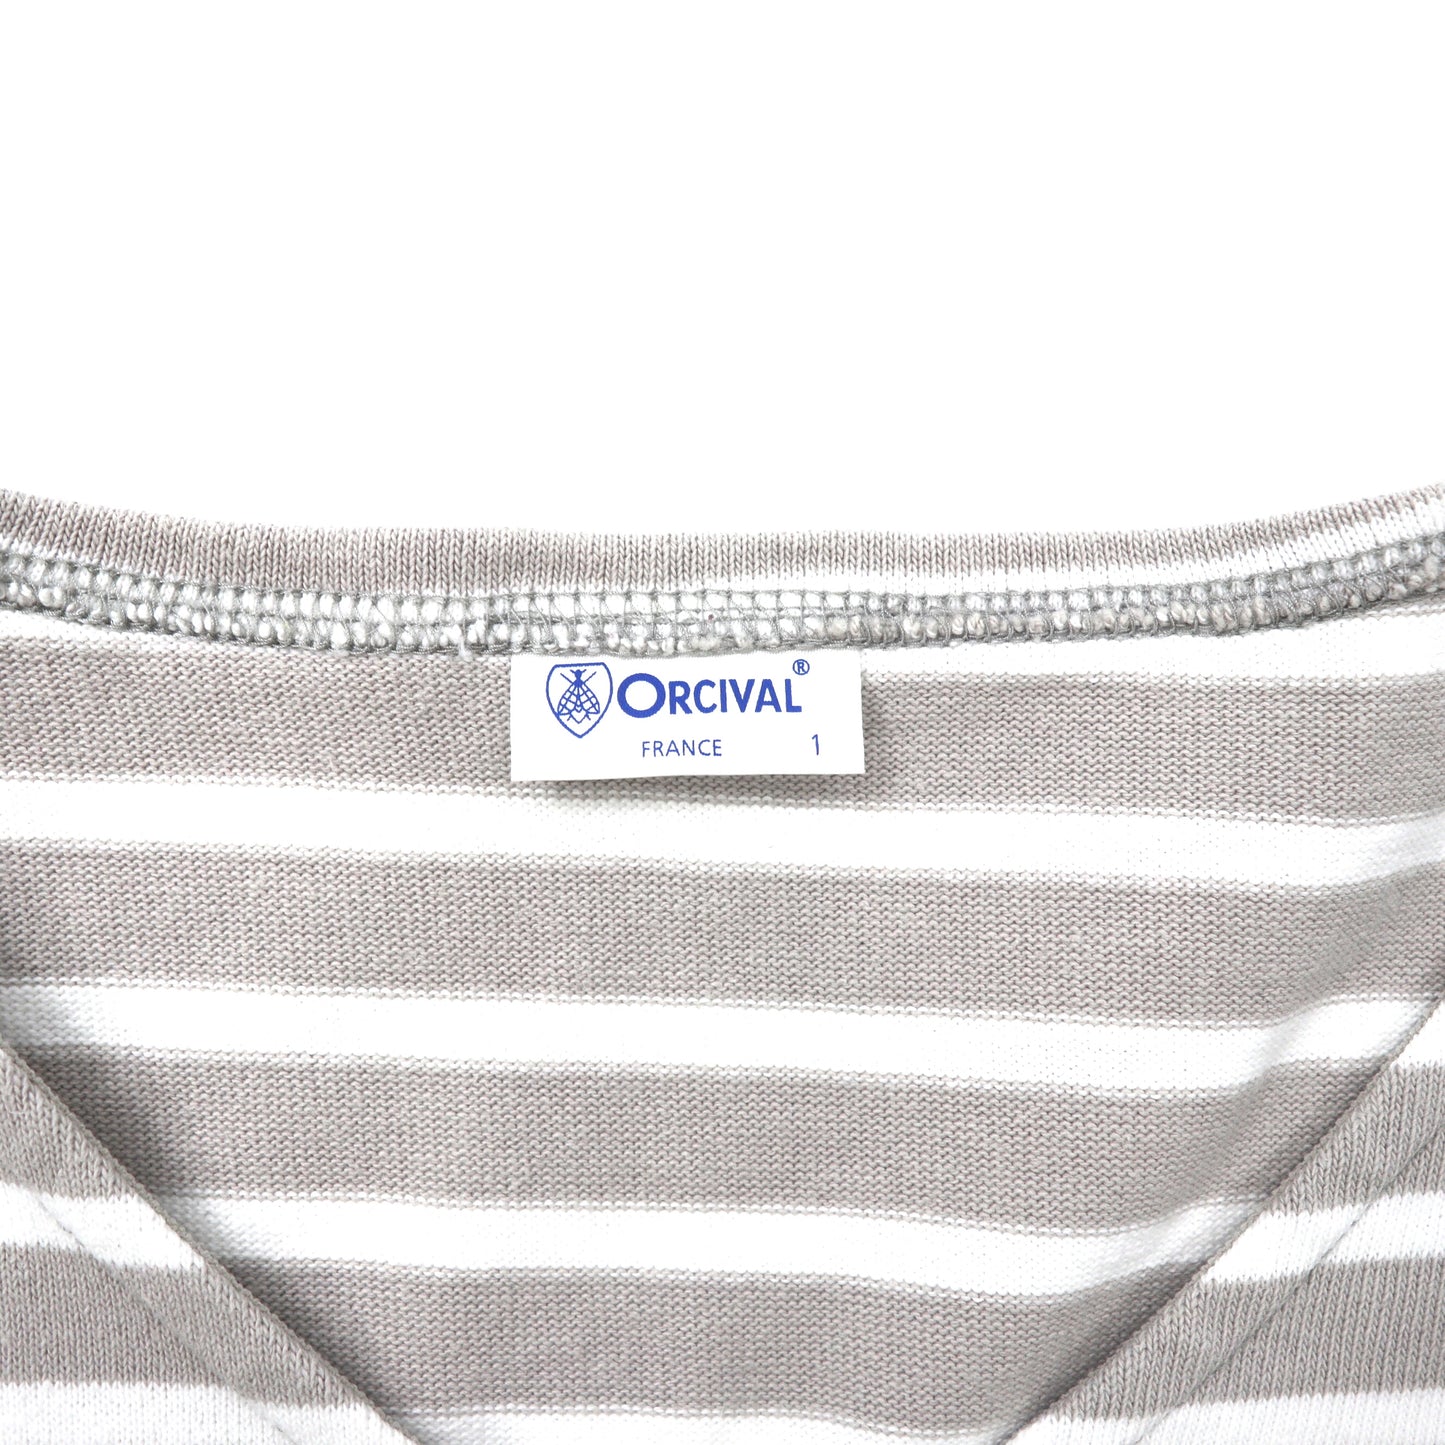 ORCIVAL VネックTシャツ 1 グレー ボーダー コットン 日本製